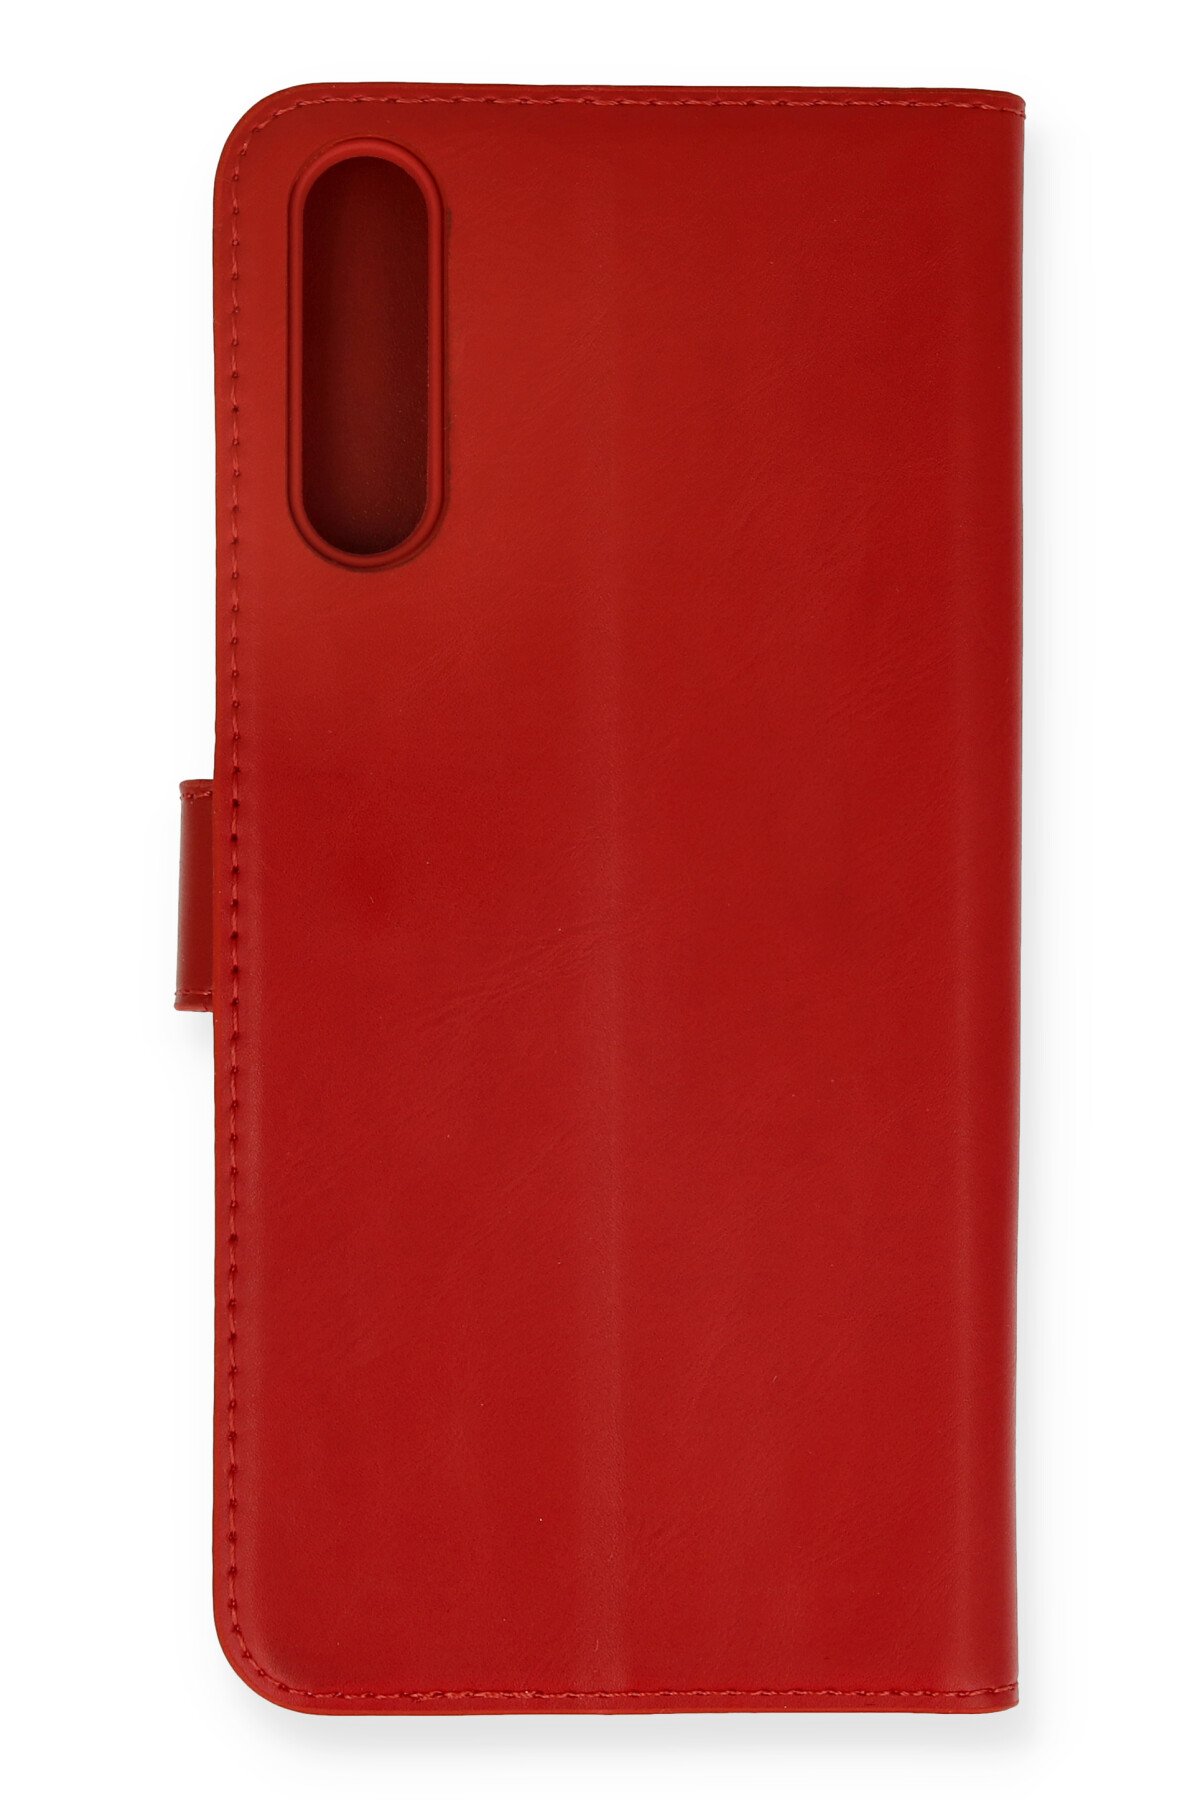 NewFace Newface Huawei Y8P Kılıf Trend S Plus Kapaklı Kılıf - Kırmızı